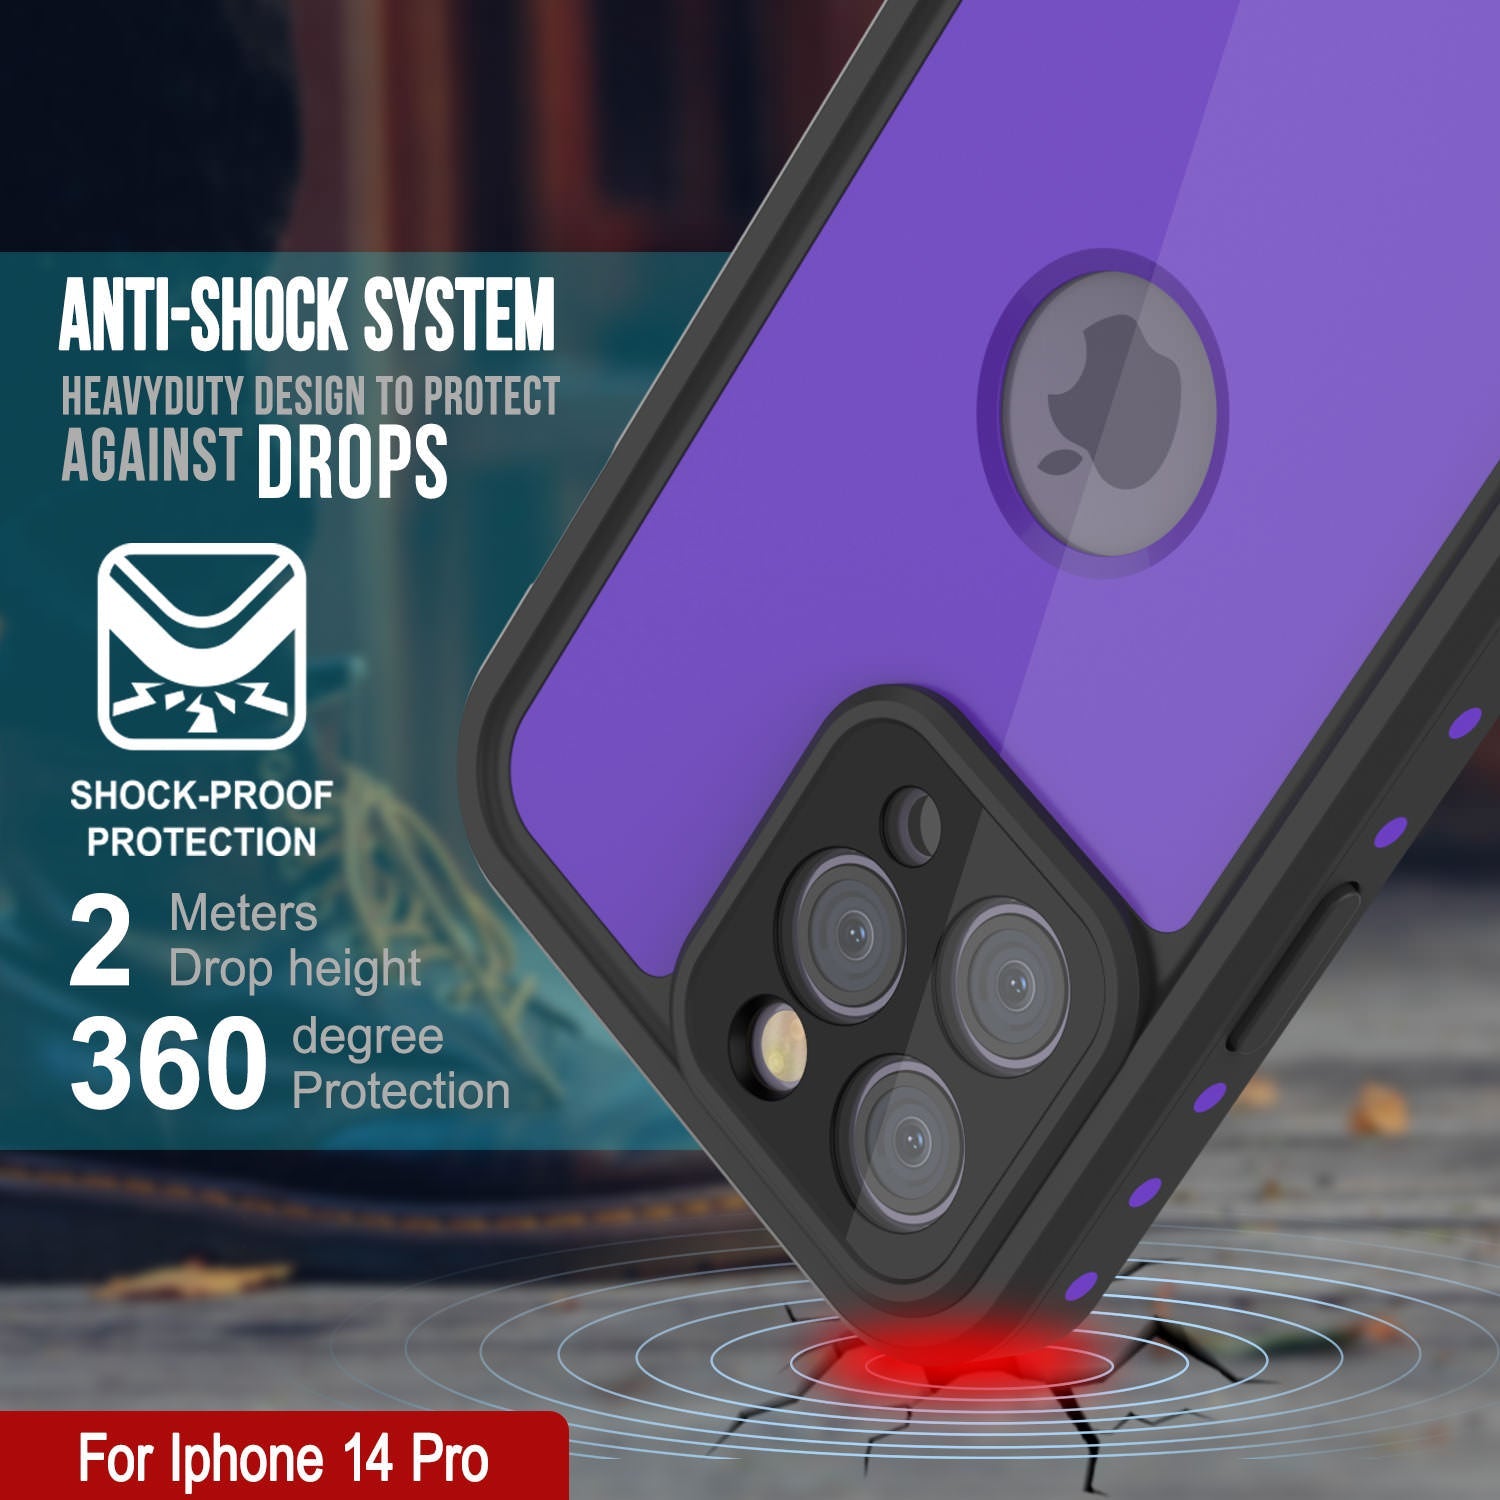 iPhone 14 Pro Waterproof IP68 Case, Punkcase [Purple] [StudStar Series] [Slim Fit] [Dirtproof]